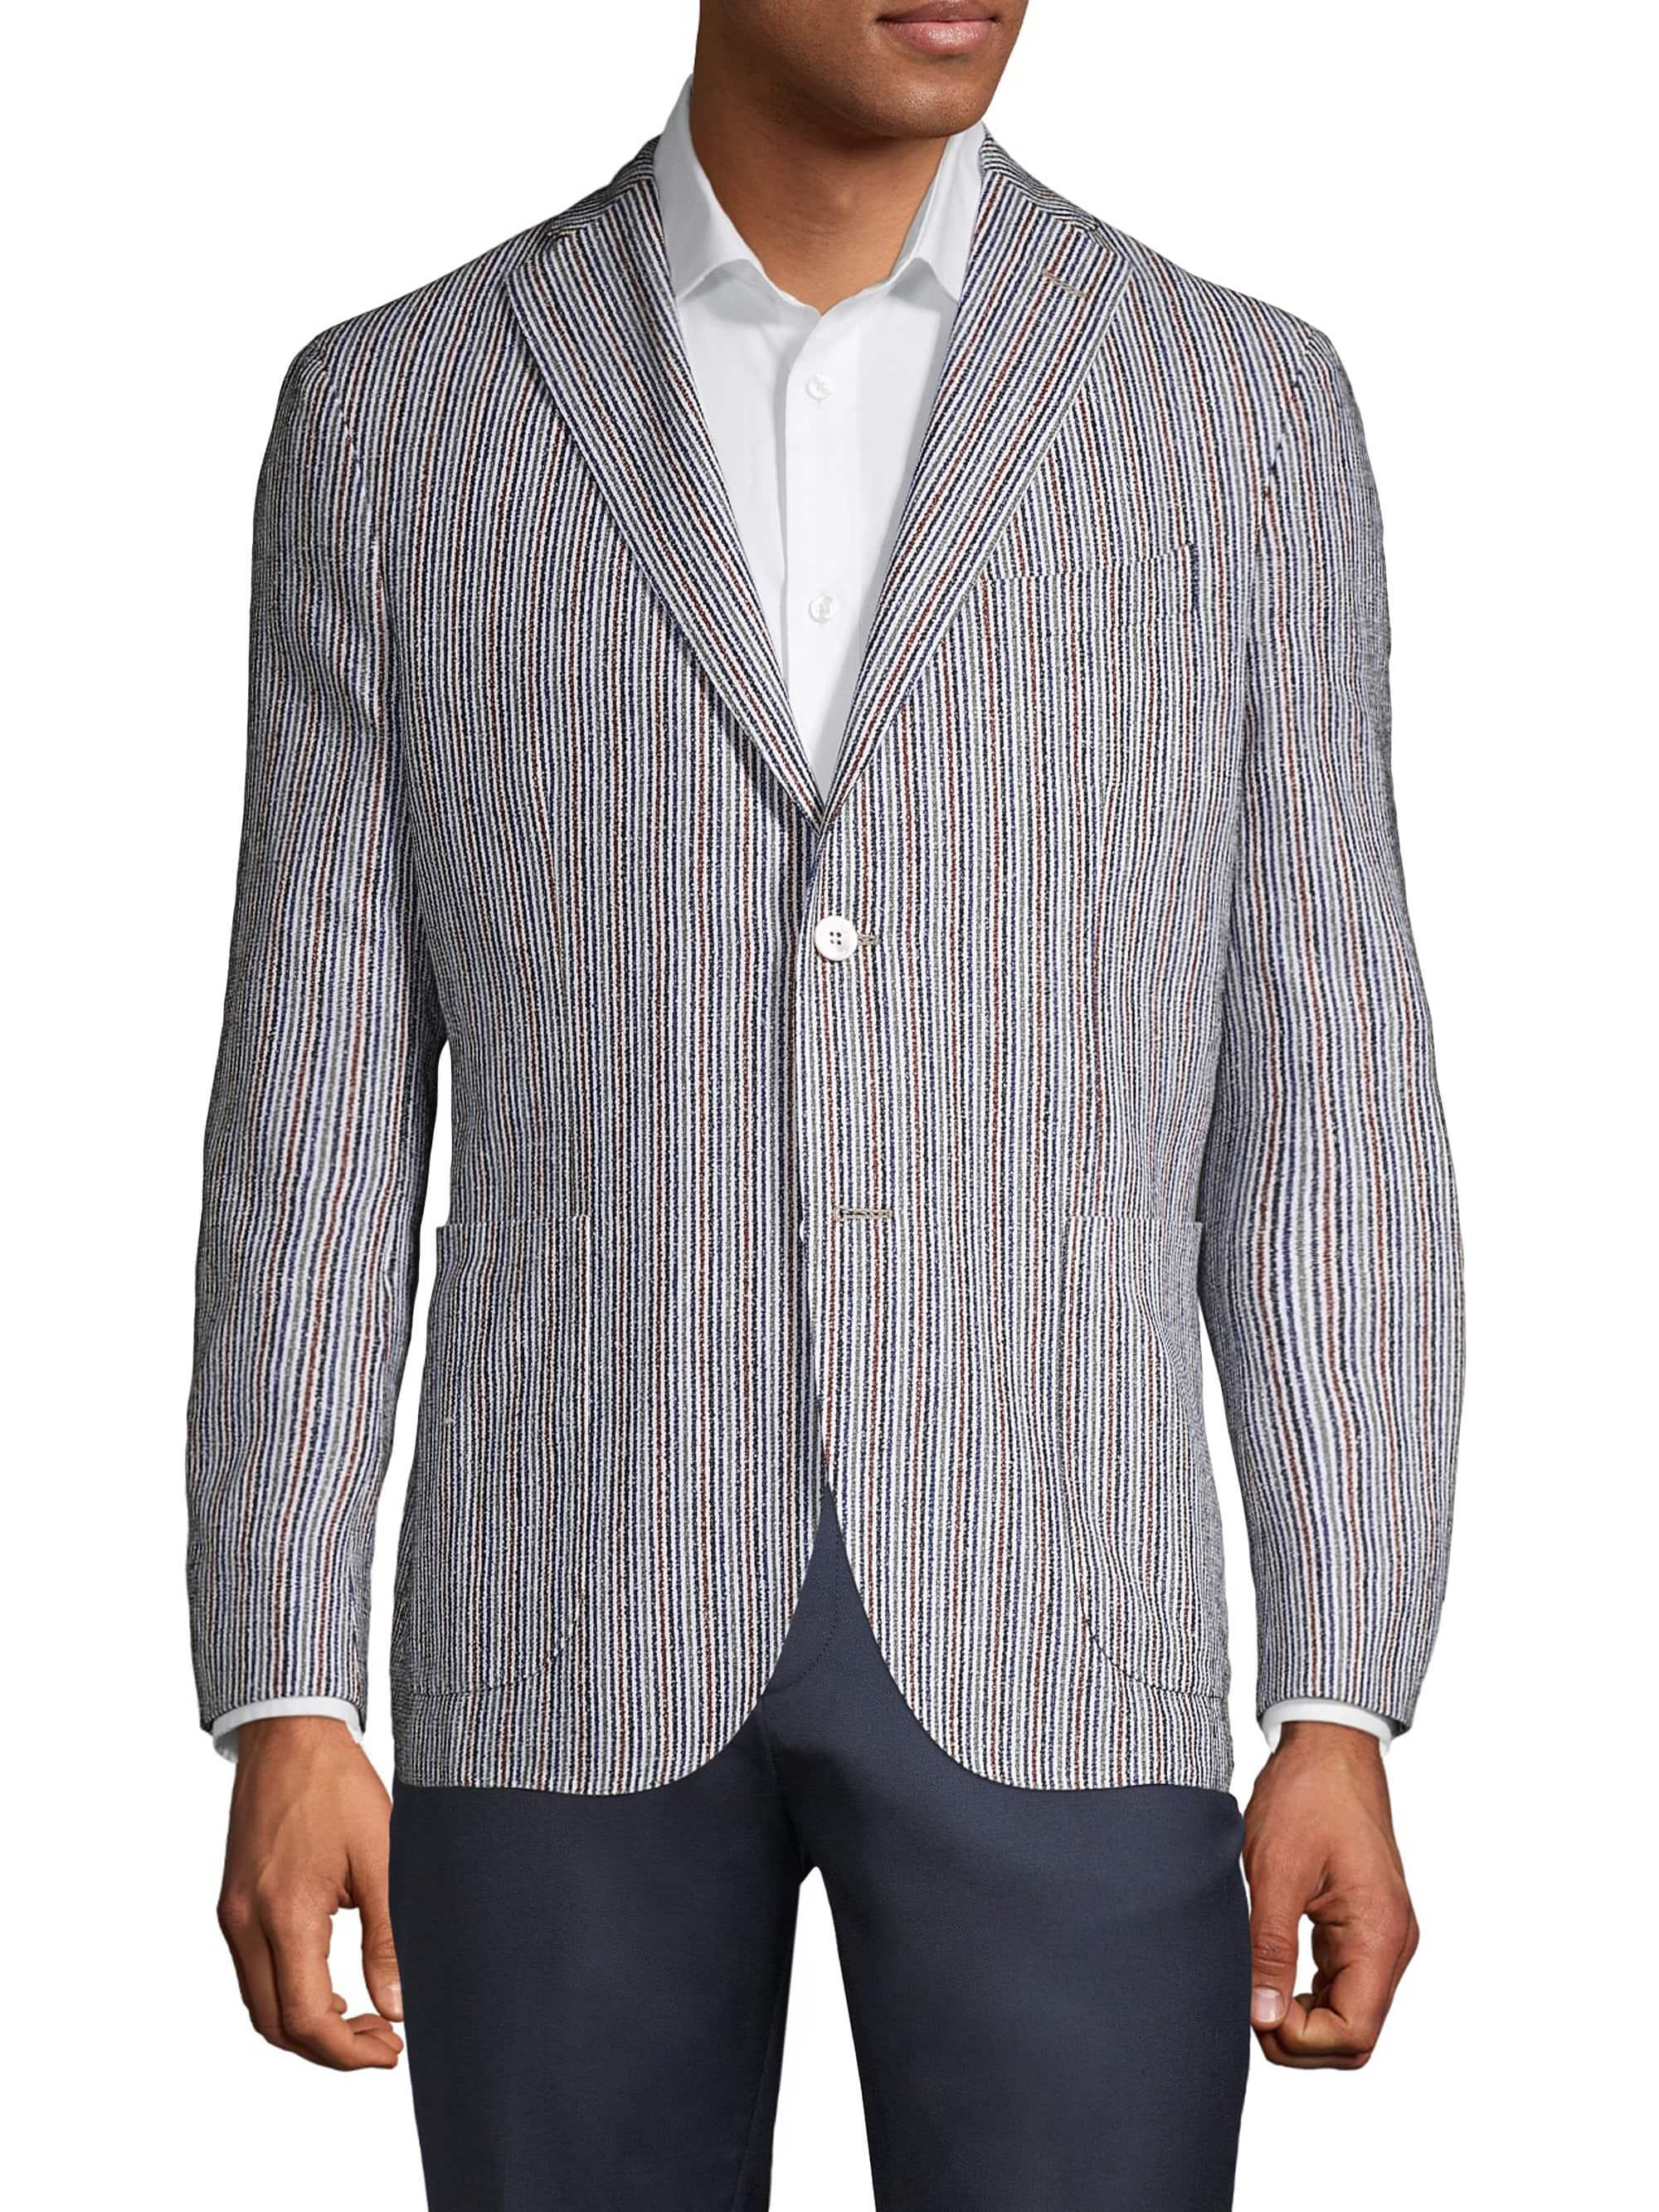 Boglioli Multi-color Stripe Sport Jacket in Gray for Men - Lyst